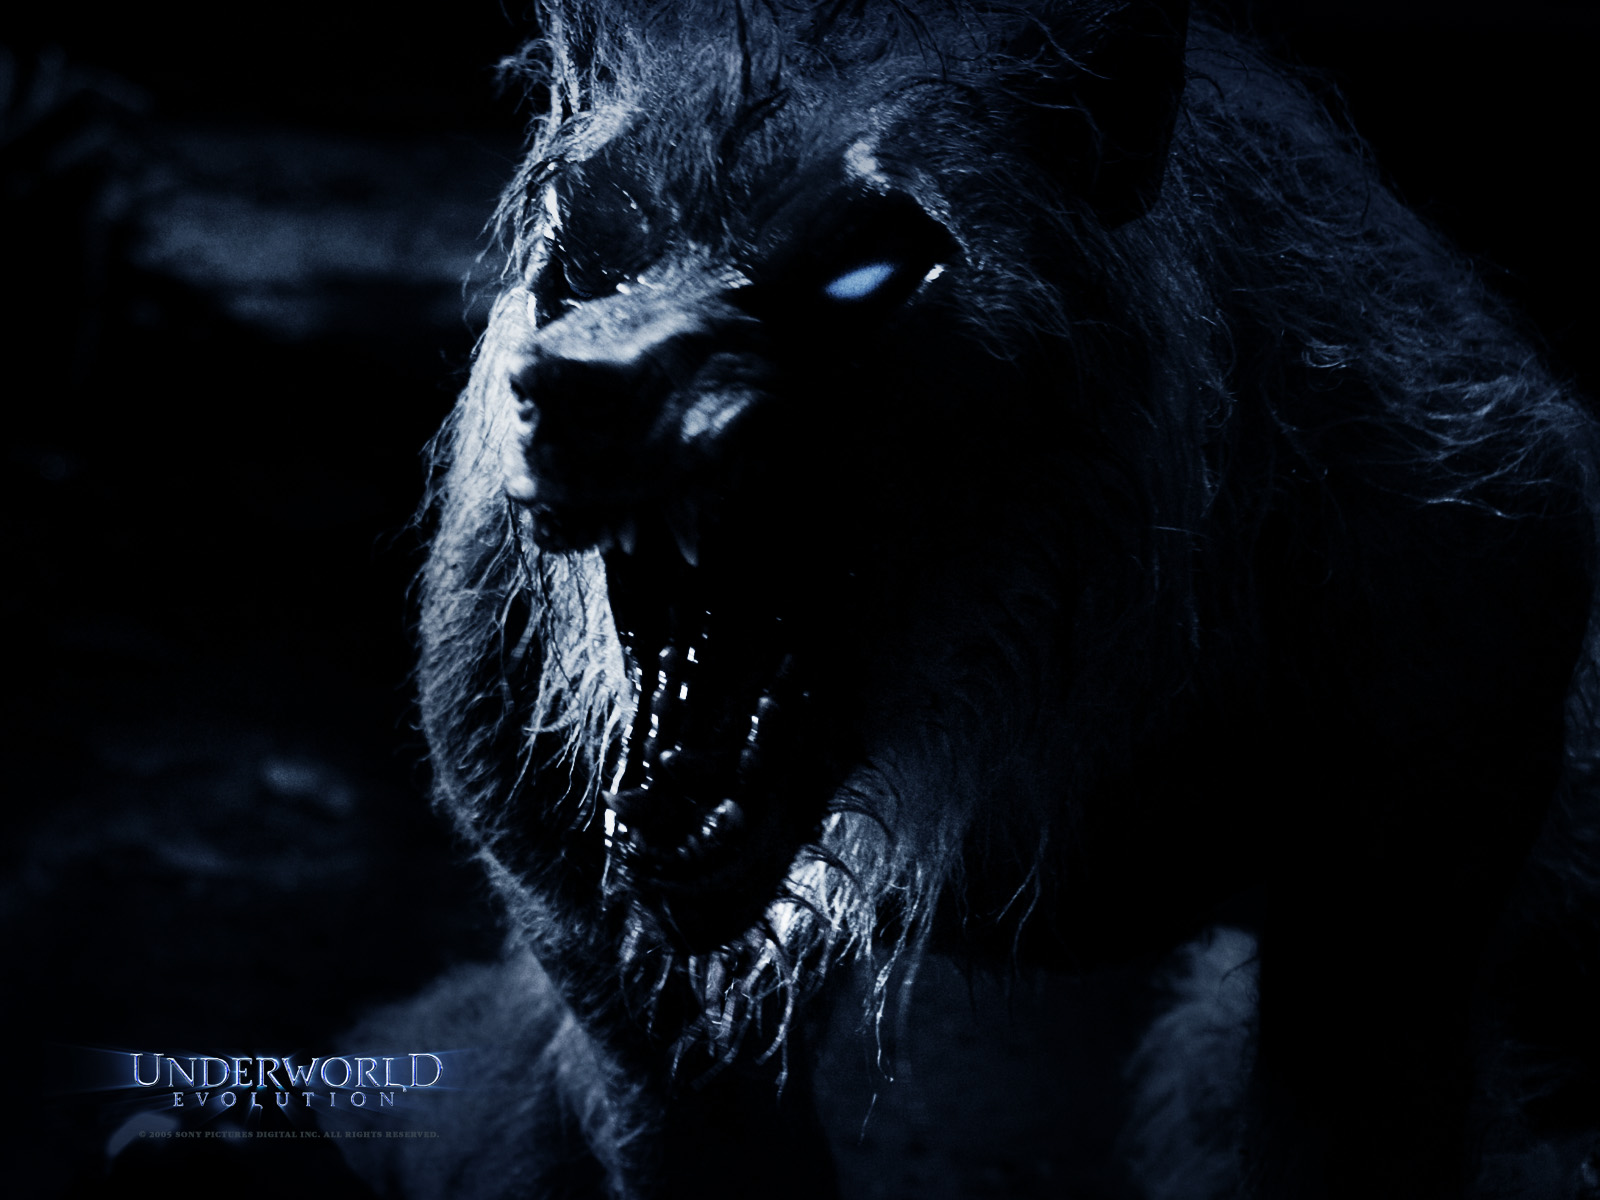 Free download wallpaper Movie, Underworld: Evolution on your PC desktop